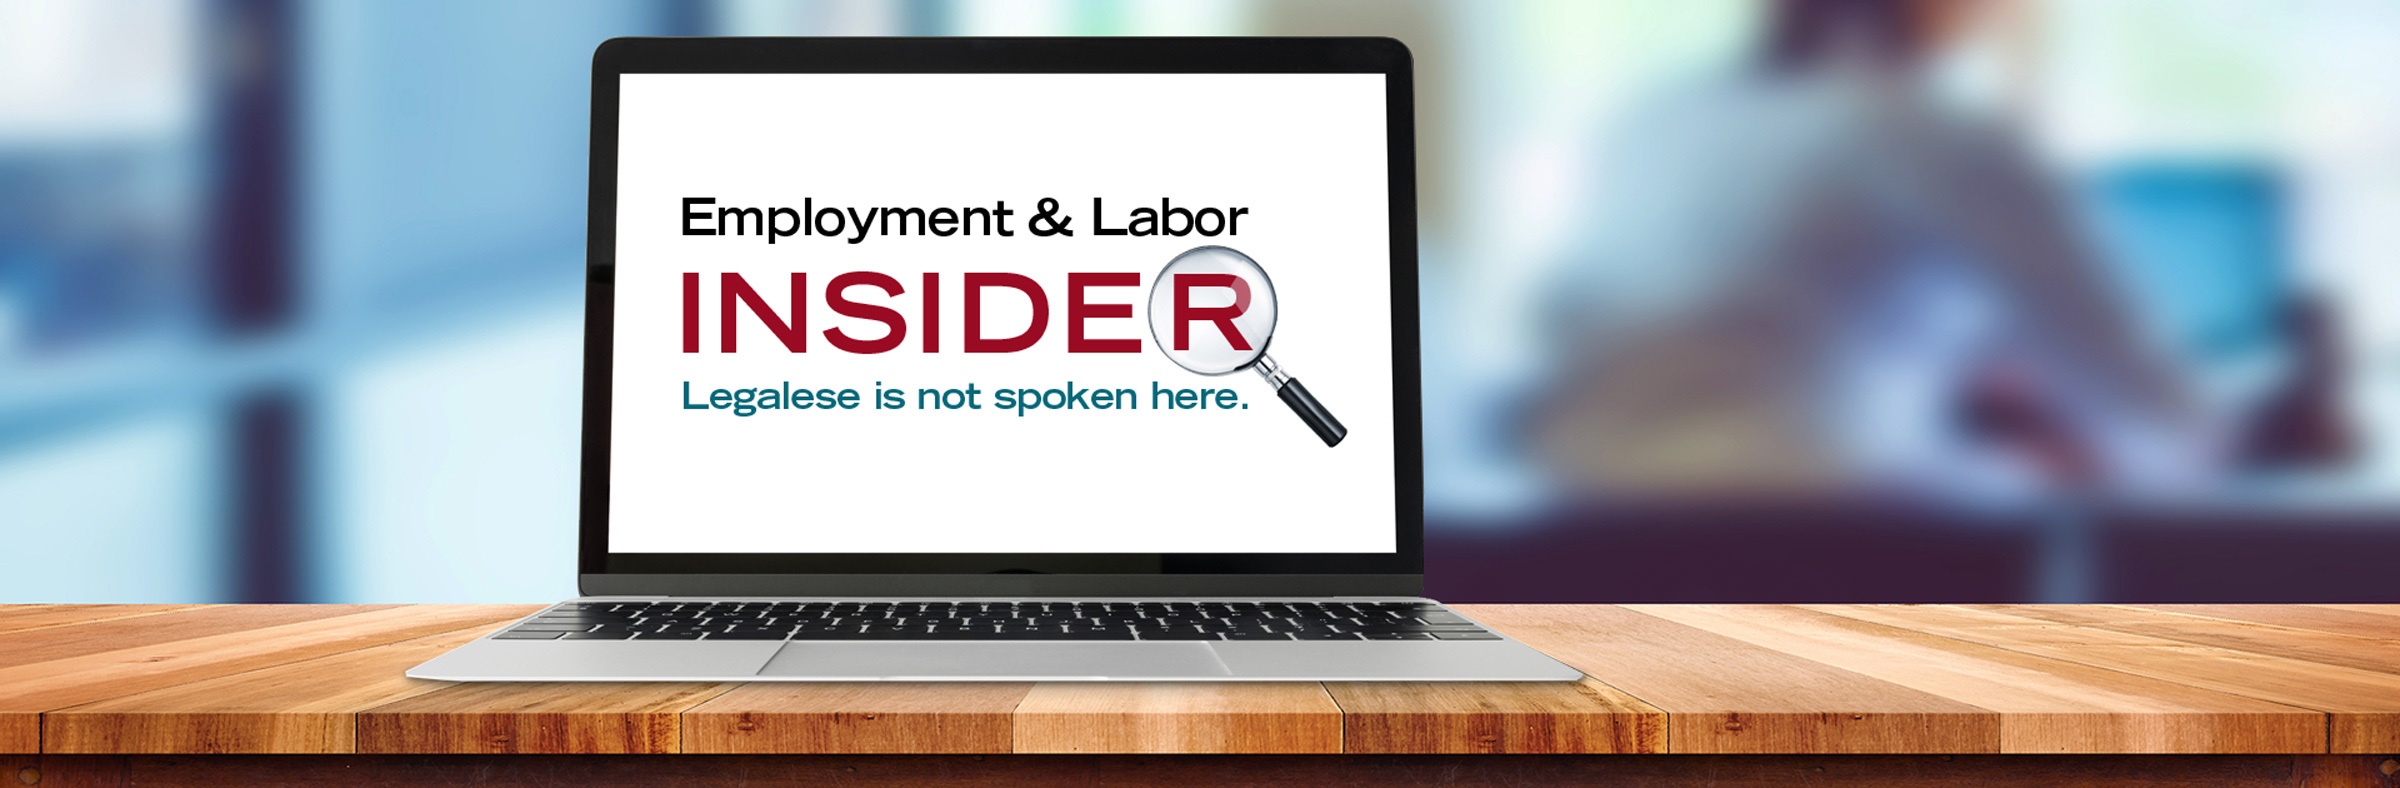 Employment & Labor Insider